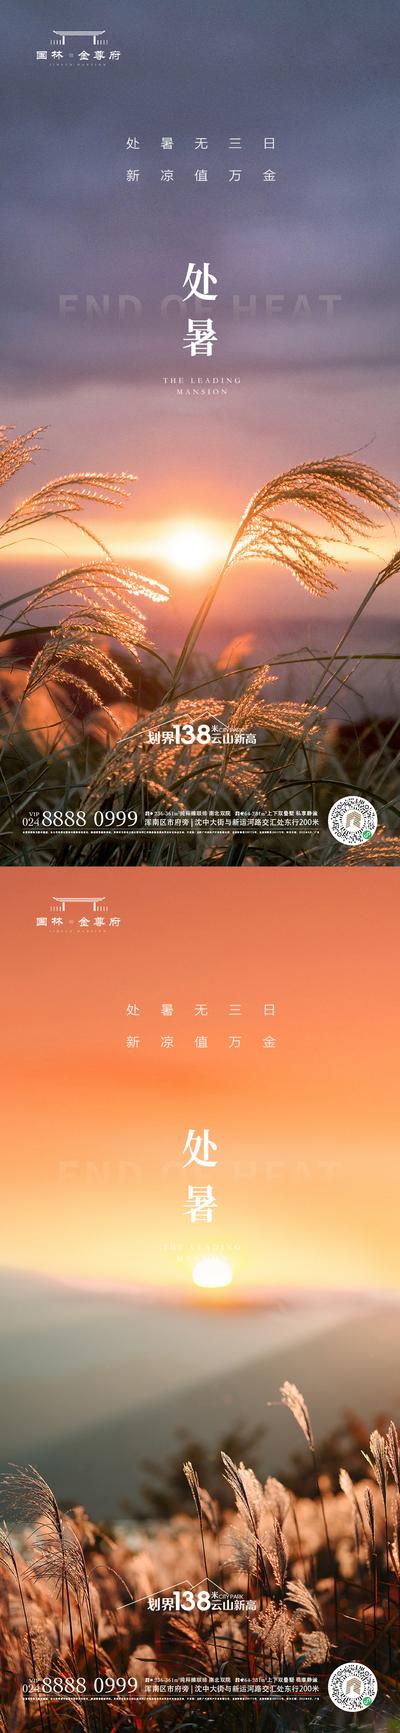 南门网 广告 海报 节气 处暑 二十四节气 秋天 秋分 系列 黄昏